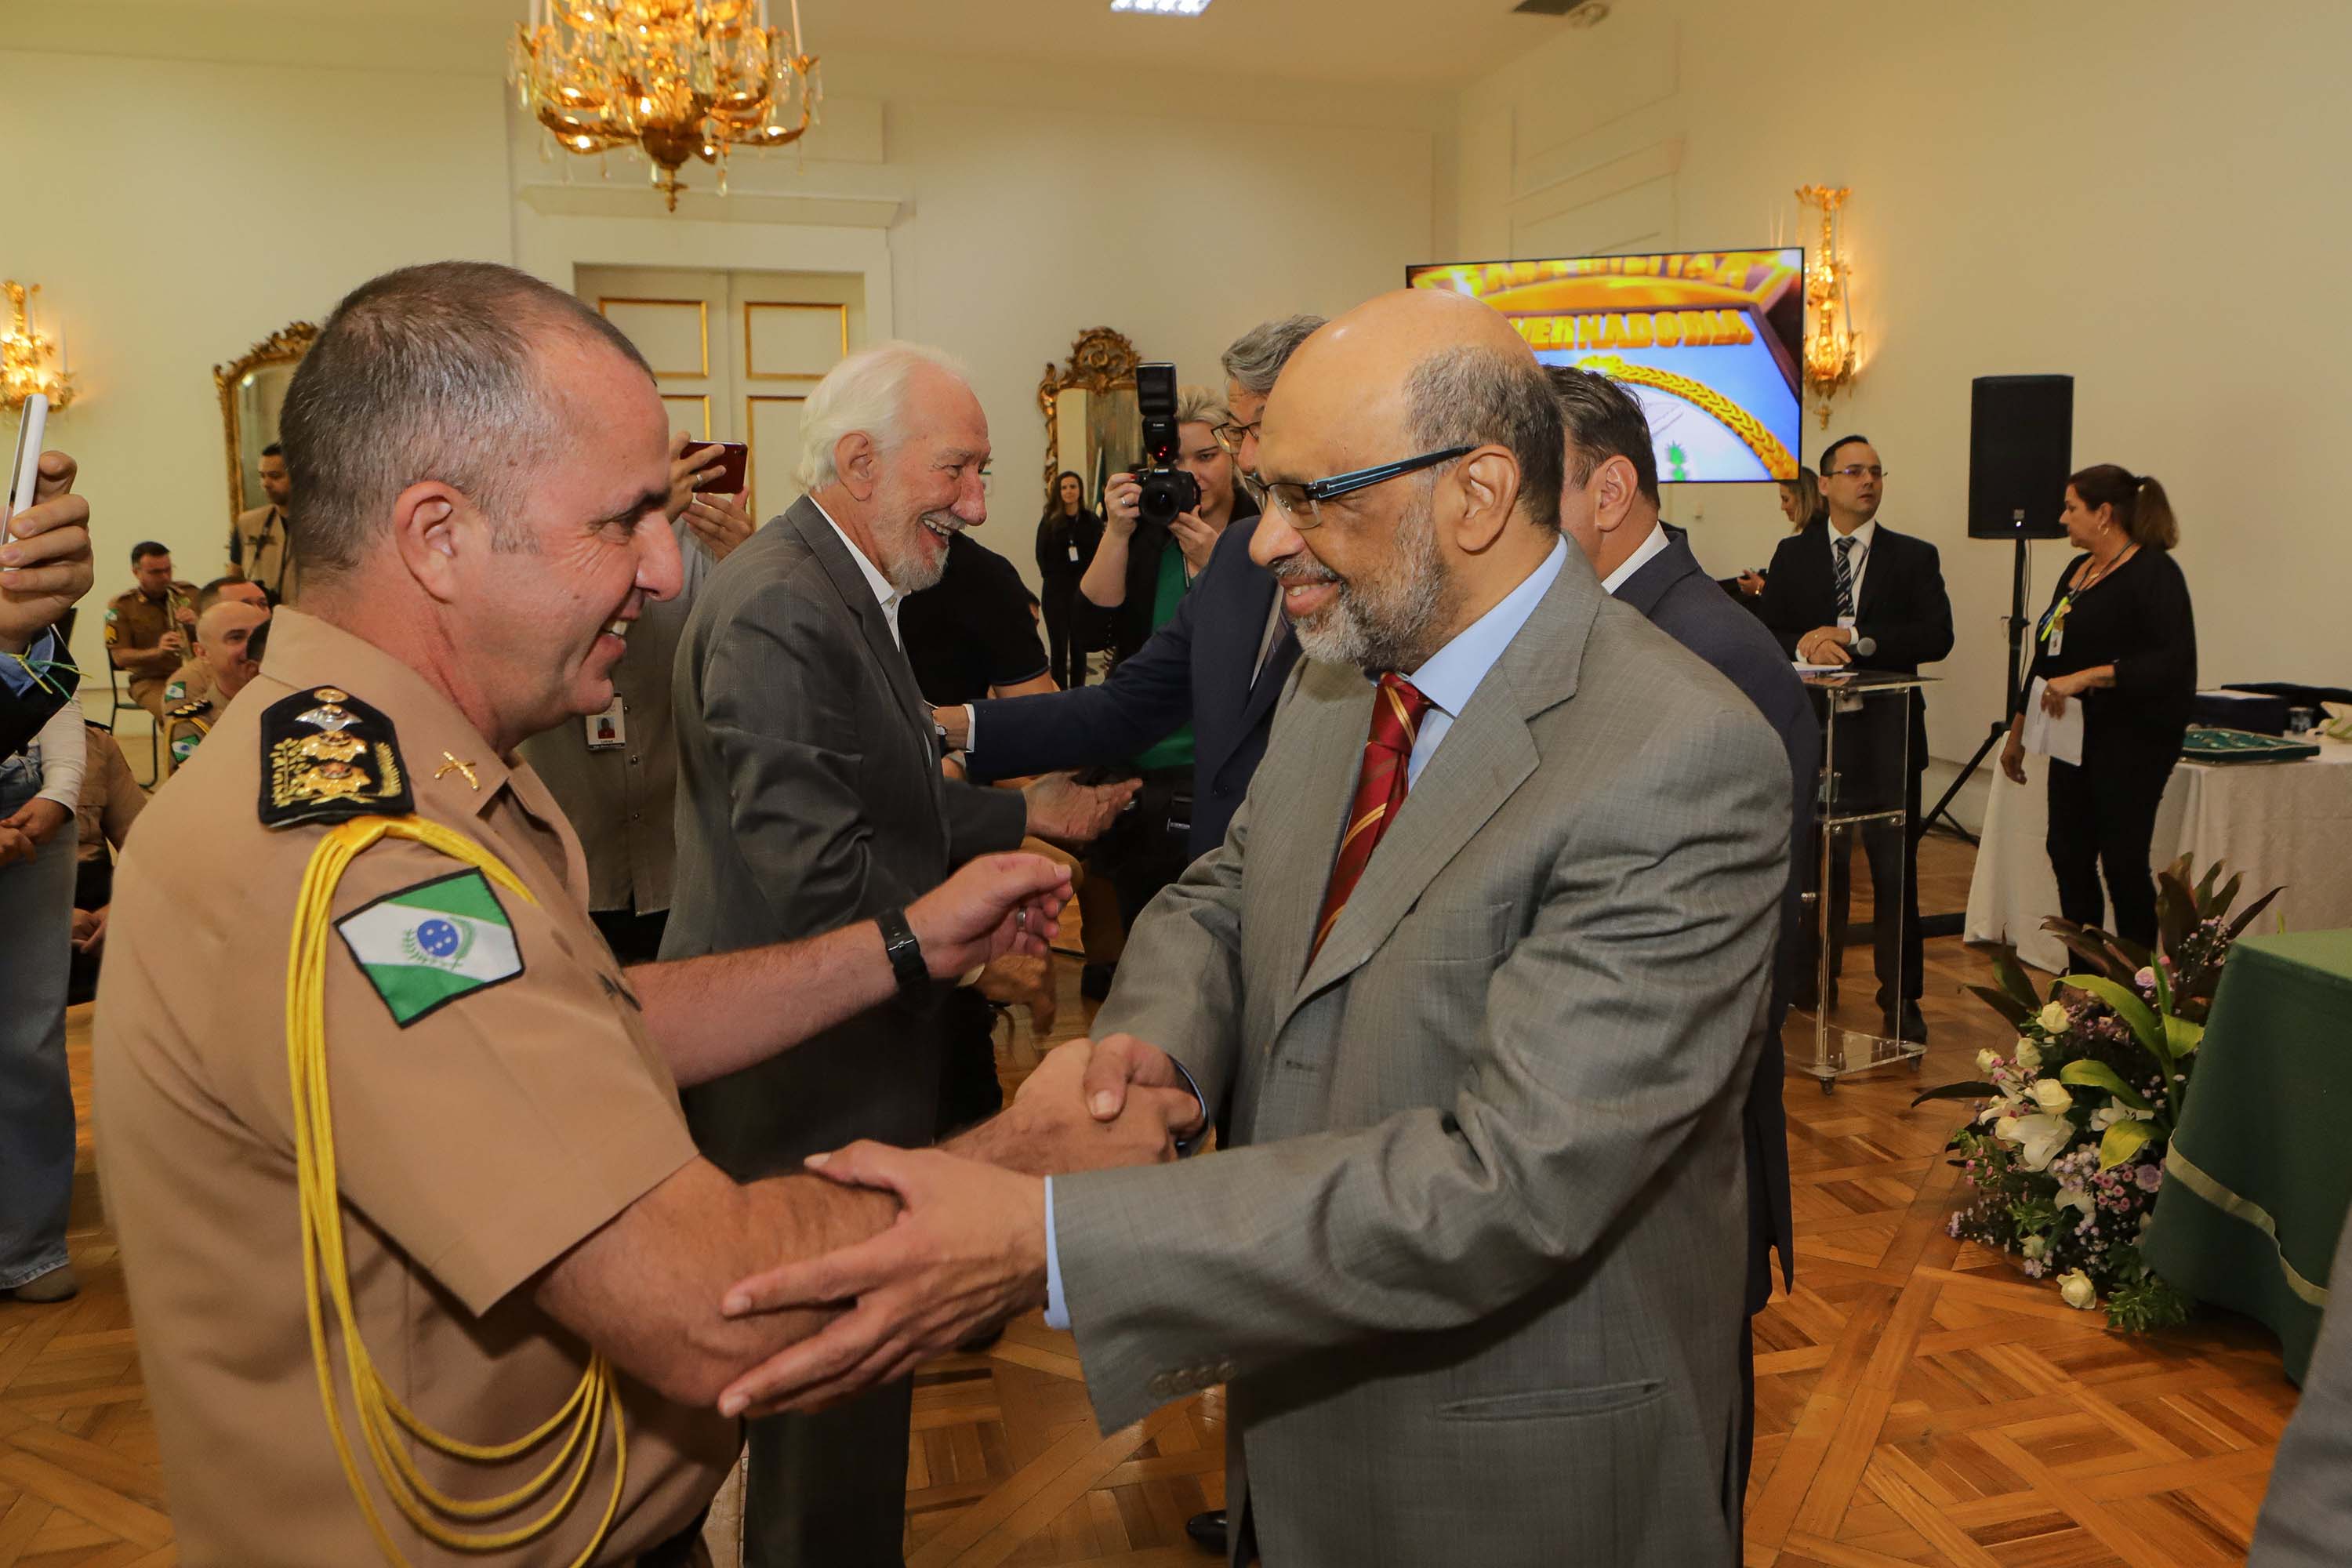 Renê Garcia Junior recebe medalha de mérito em comemoração aos 95 anos da Casa Militar